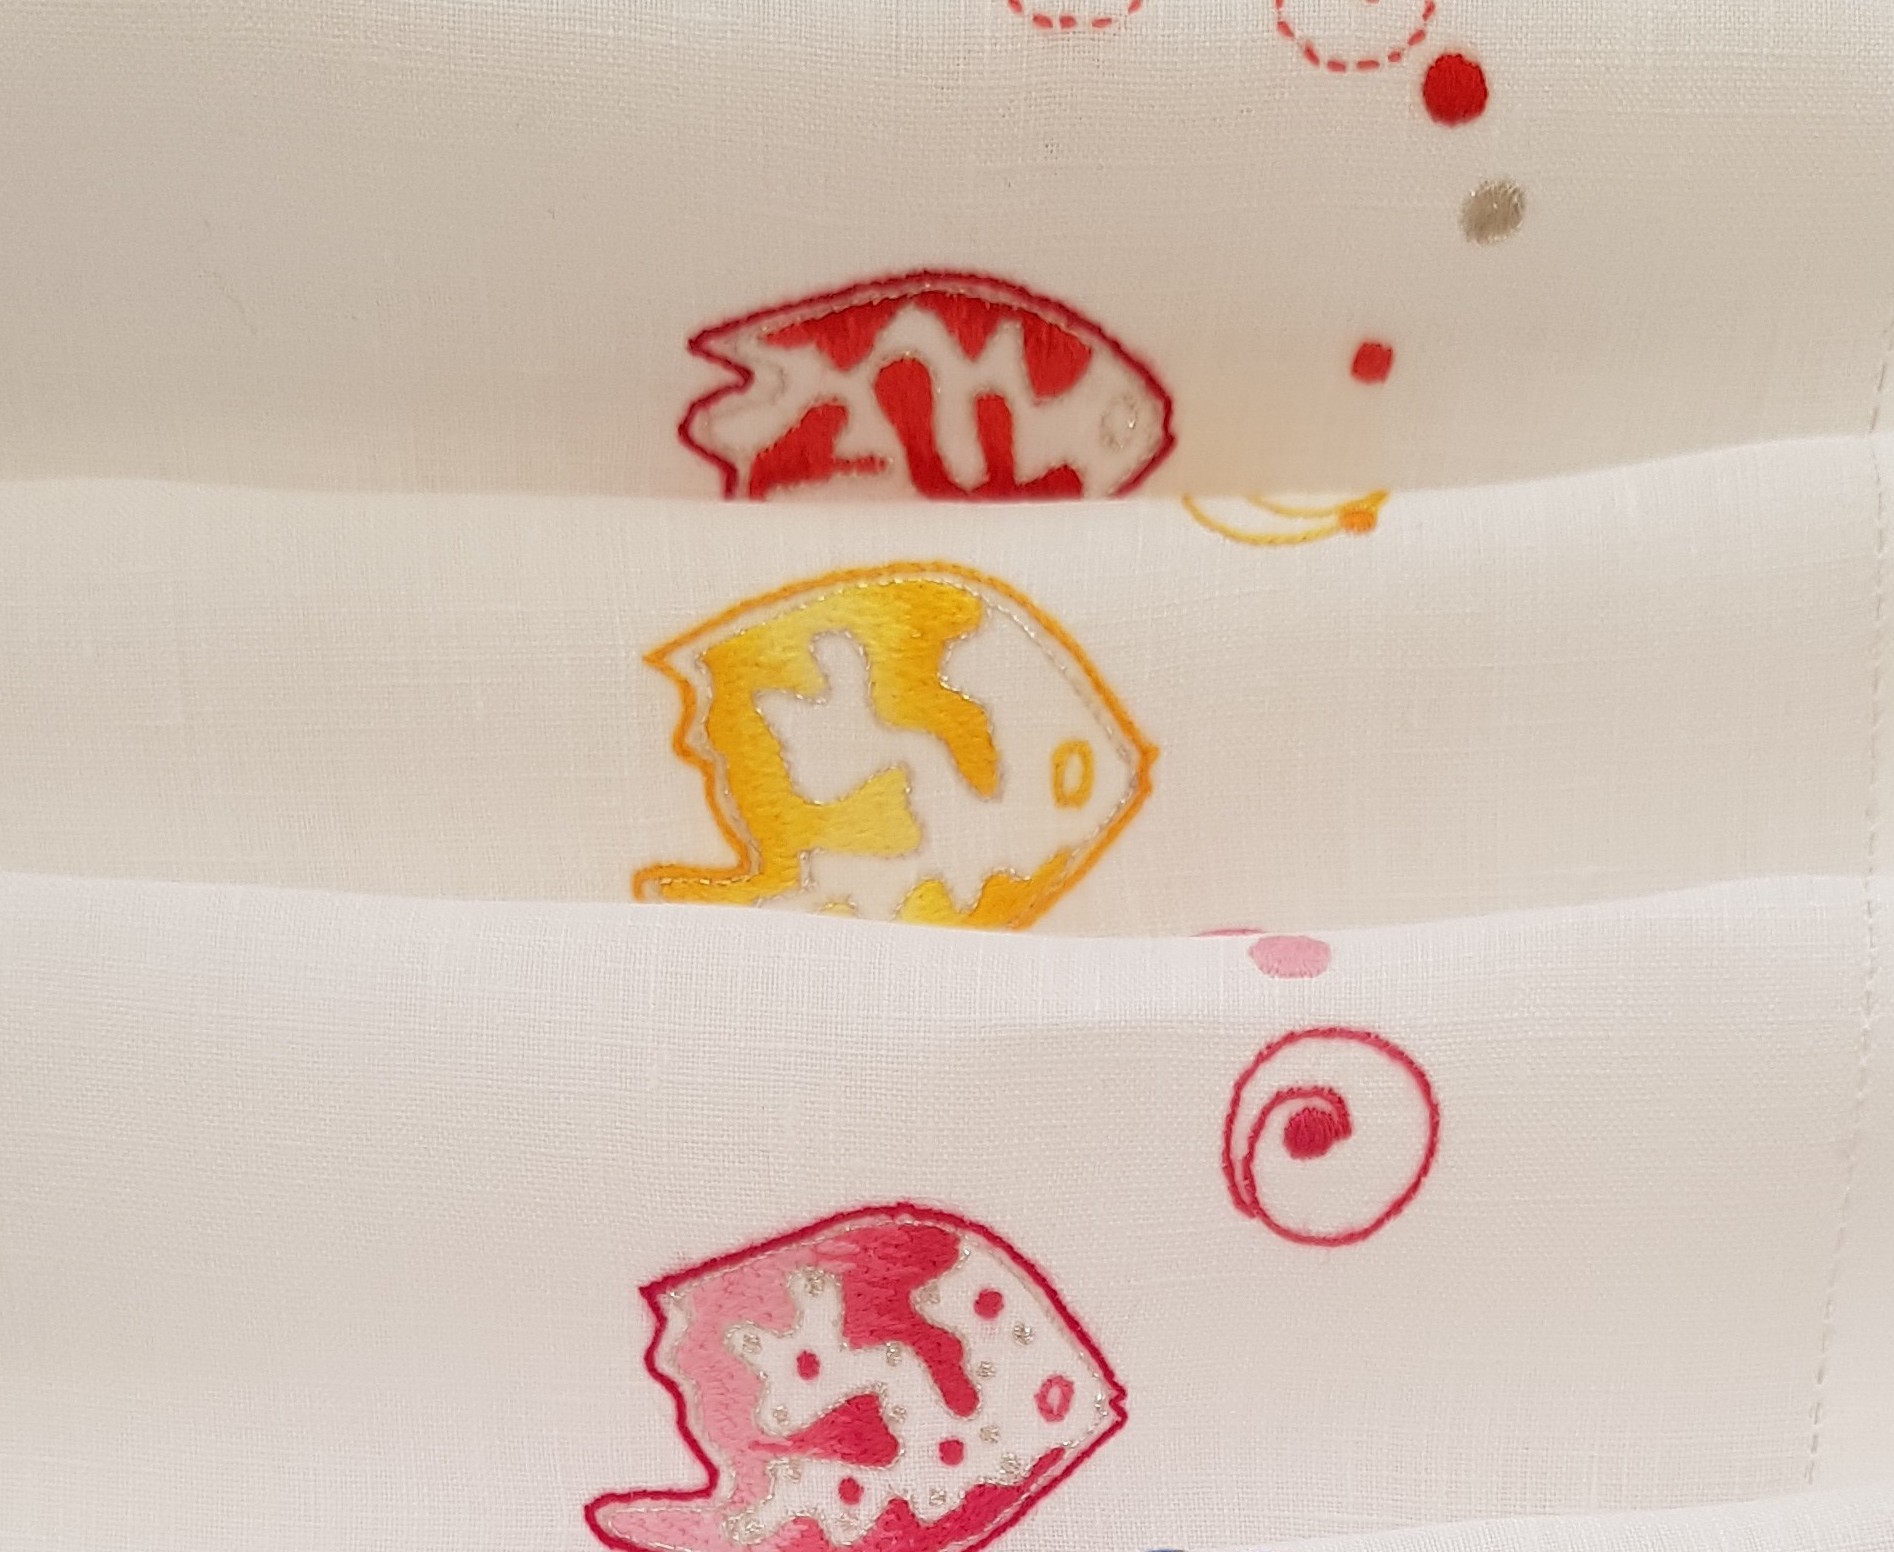 6 "Aquarius" embroidered cocktail napkins